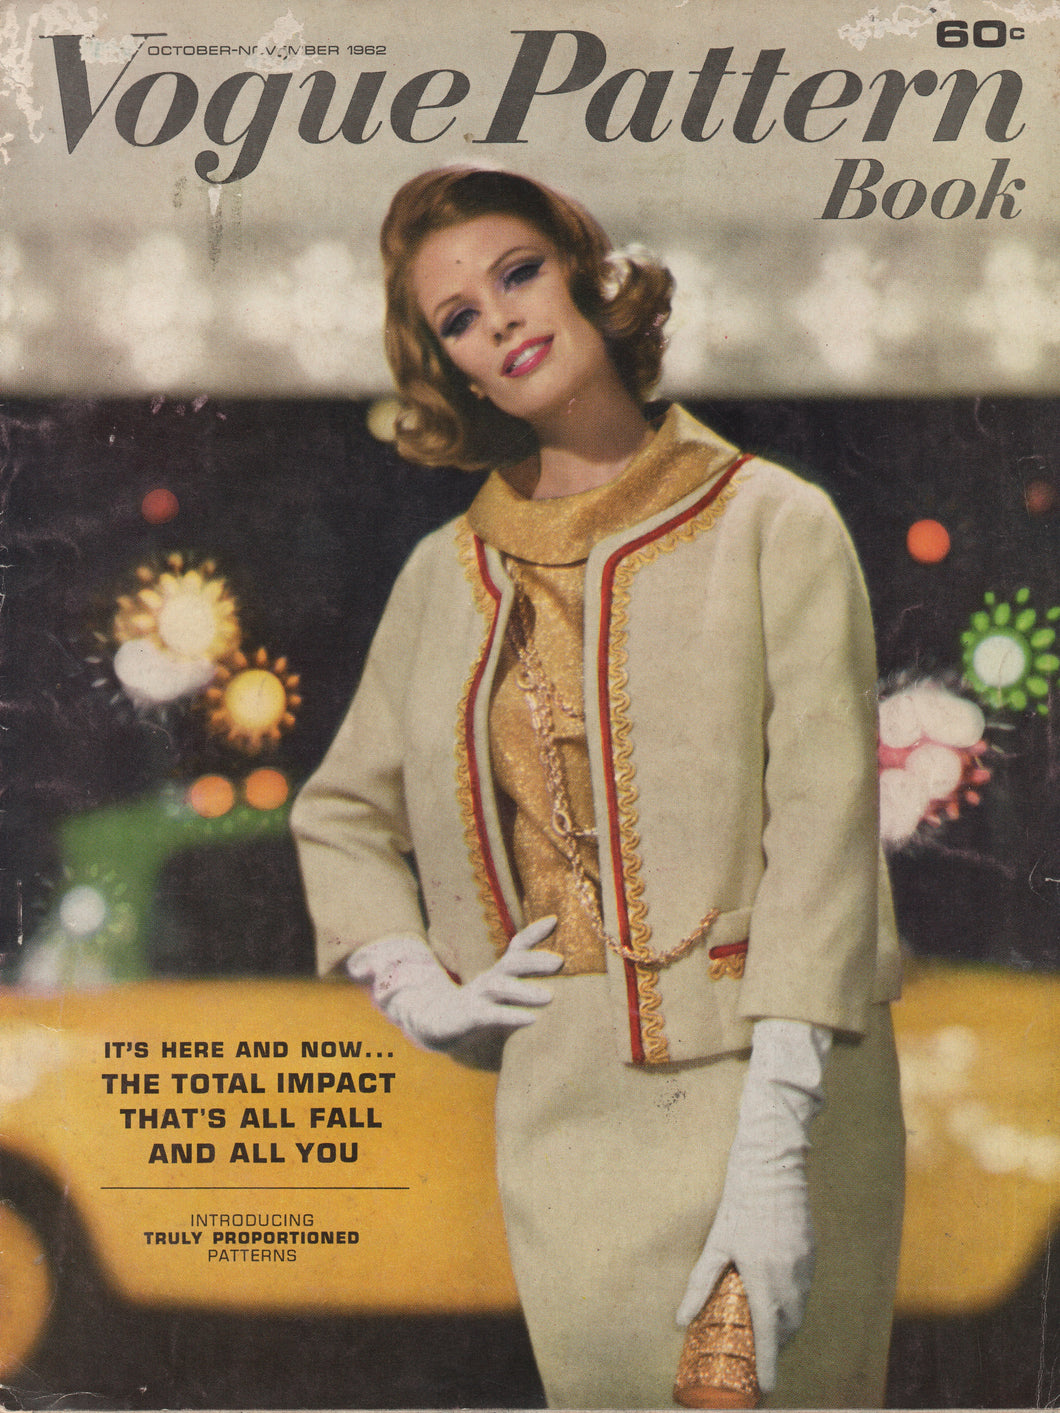 1962 Vogue Patterns October and November Pattern Book Home catalog - Digital Download